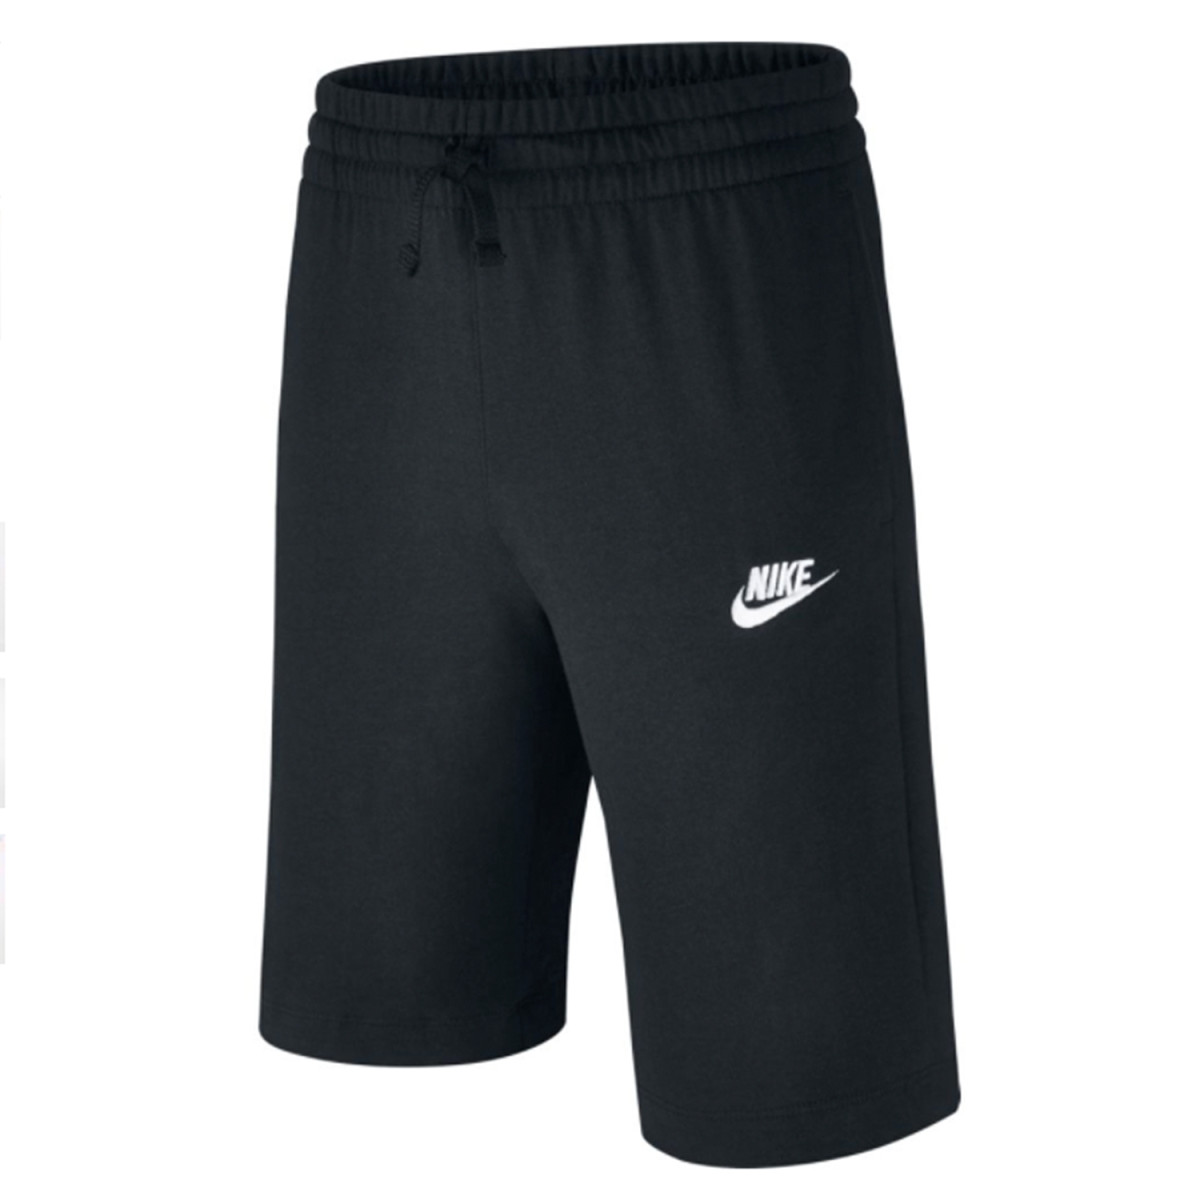 NIKE Sportswear Short - schwarz/weiß - Jr.